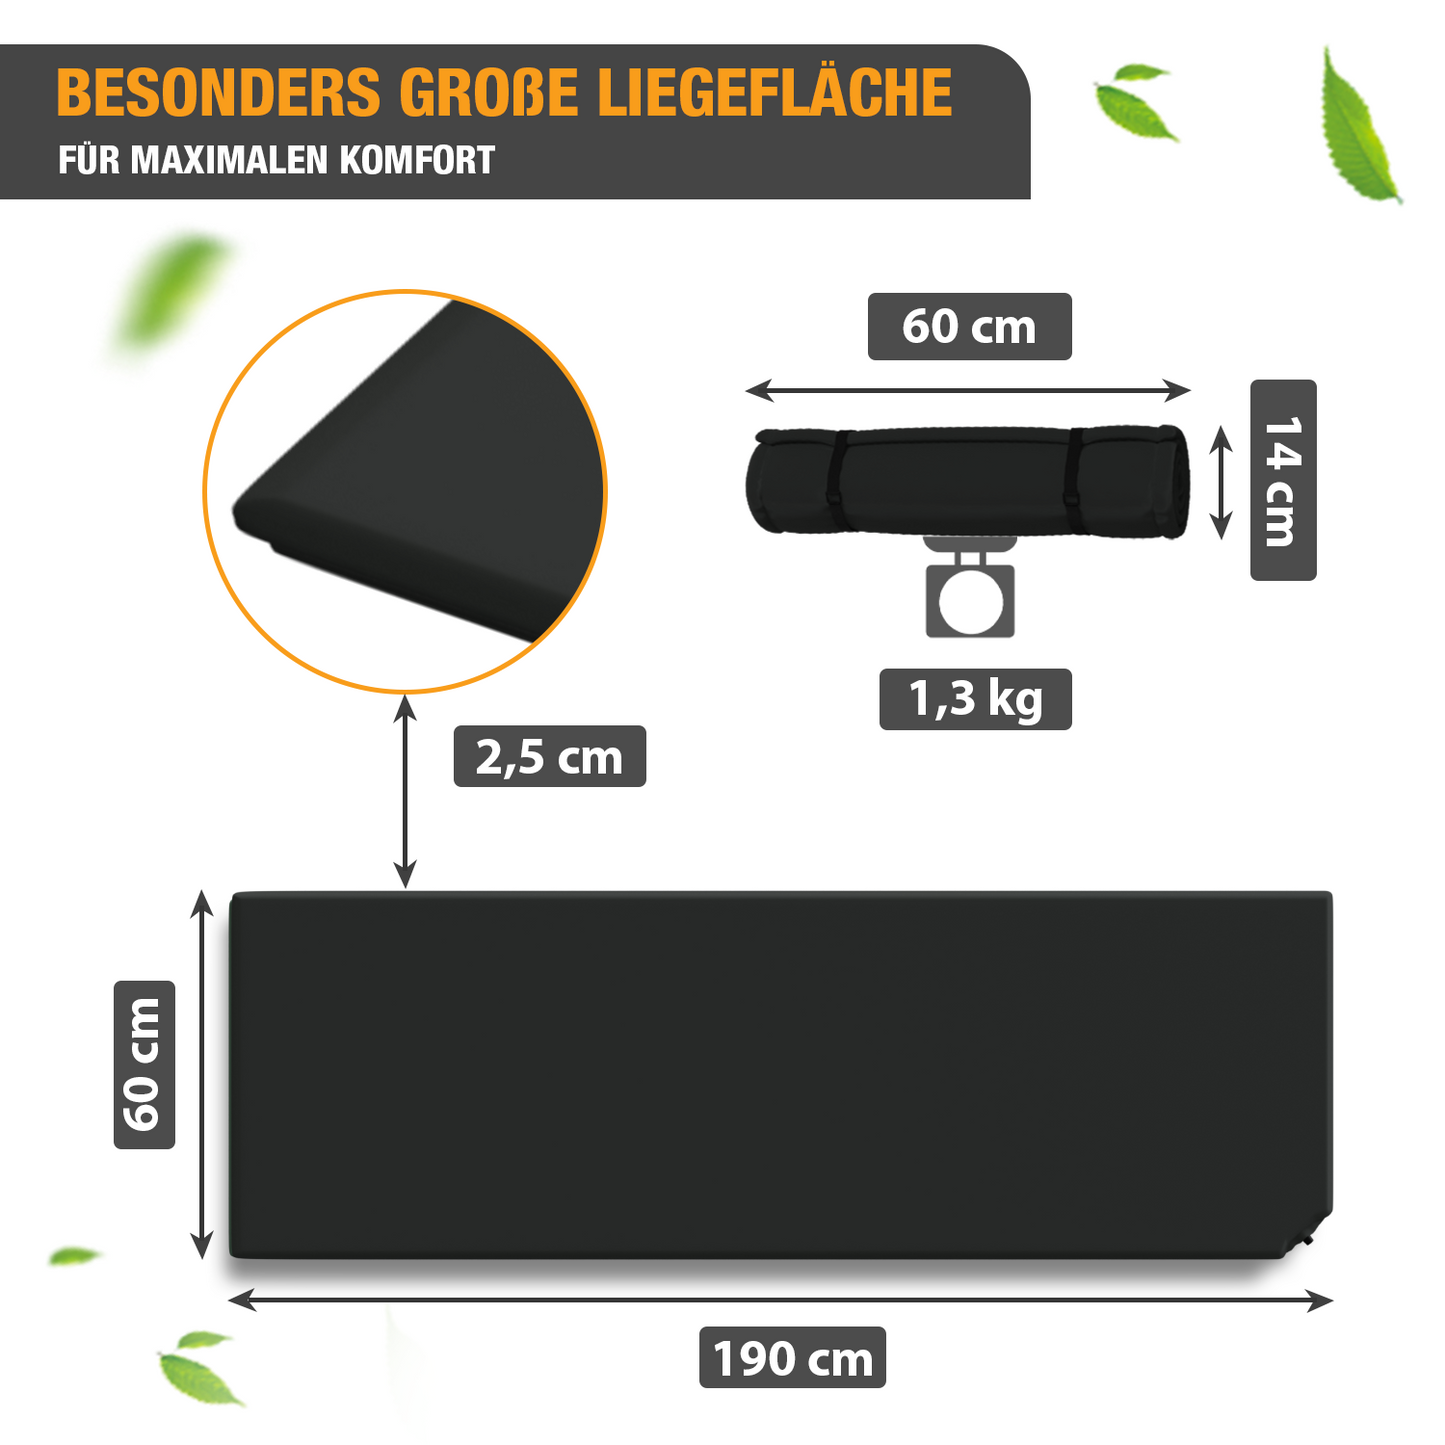 Isomatte selbstaufblasend - Luftbett - 190 x 60 x 2,5 cm - Luftmatratze - schwarz